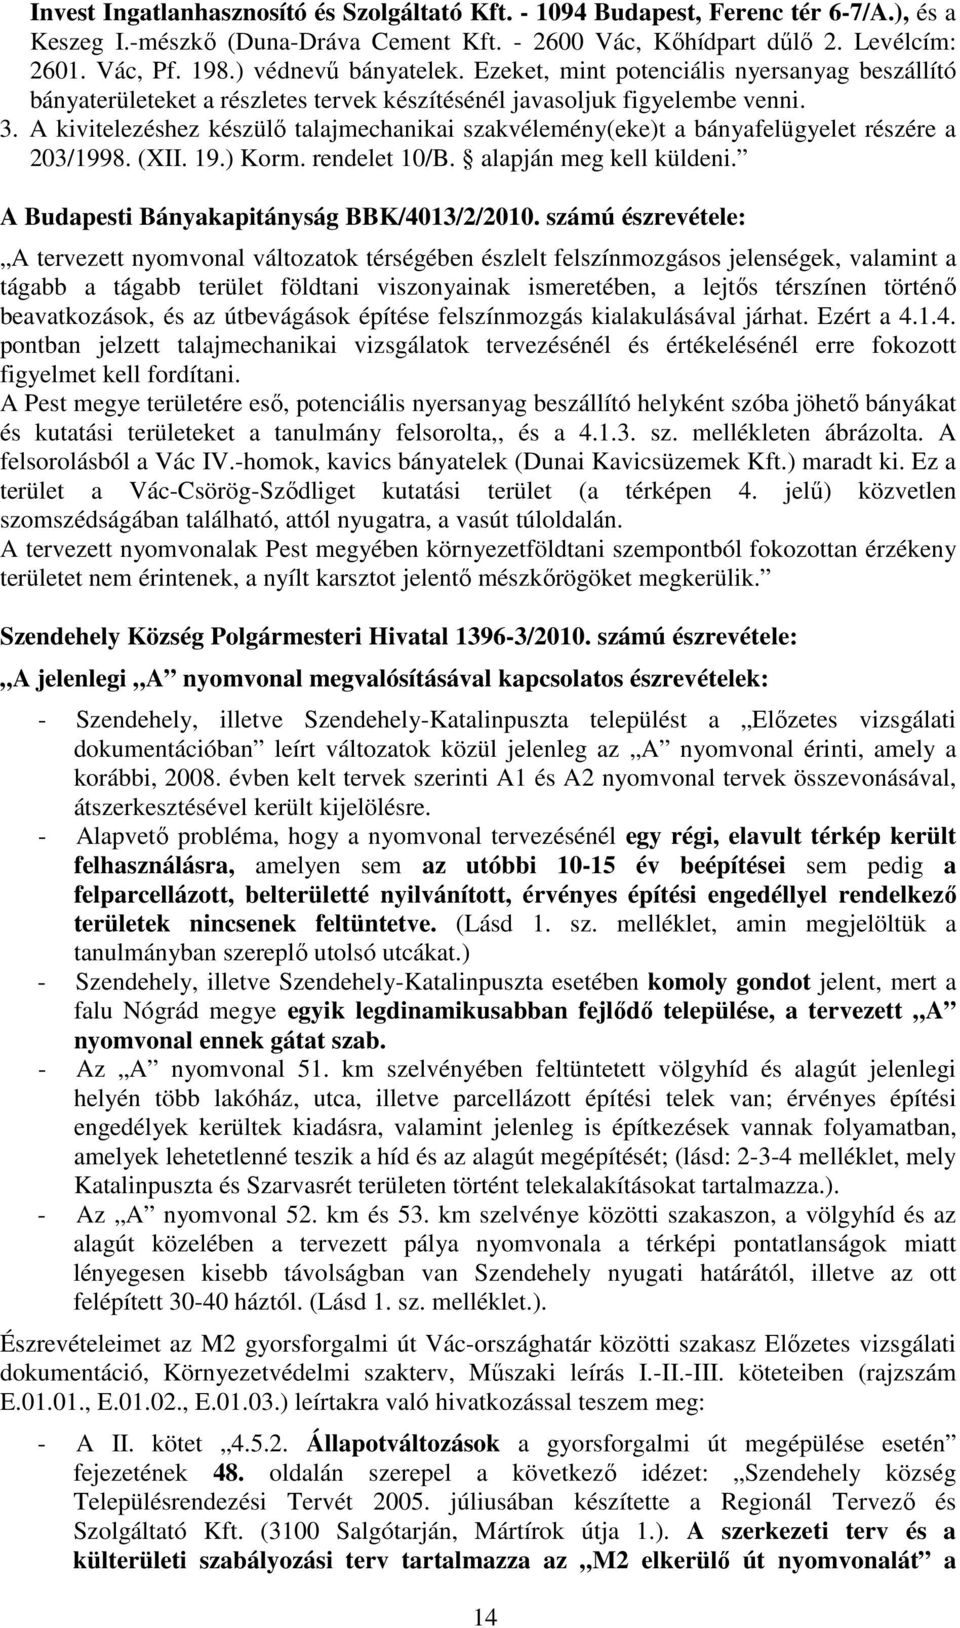 A kivitelezéshez készülı talajmechanikai szakvélemény(eke)t a bányafelügyelet részére a 203/1998. (XII. 19.) Korm. rendelet 10/B. alapján meg kell küldeni.